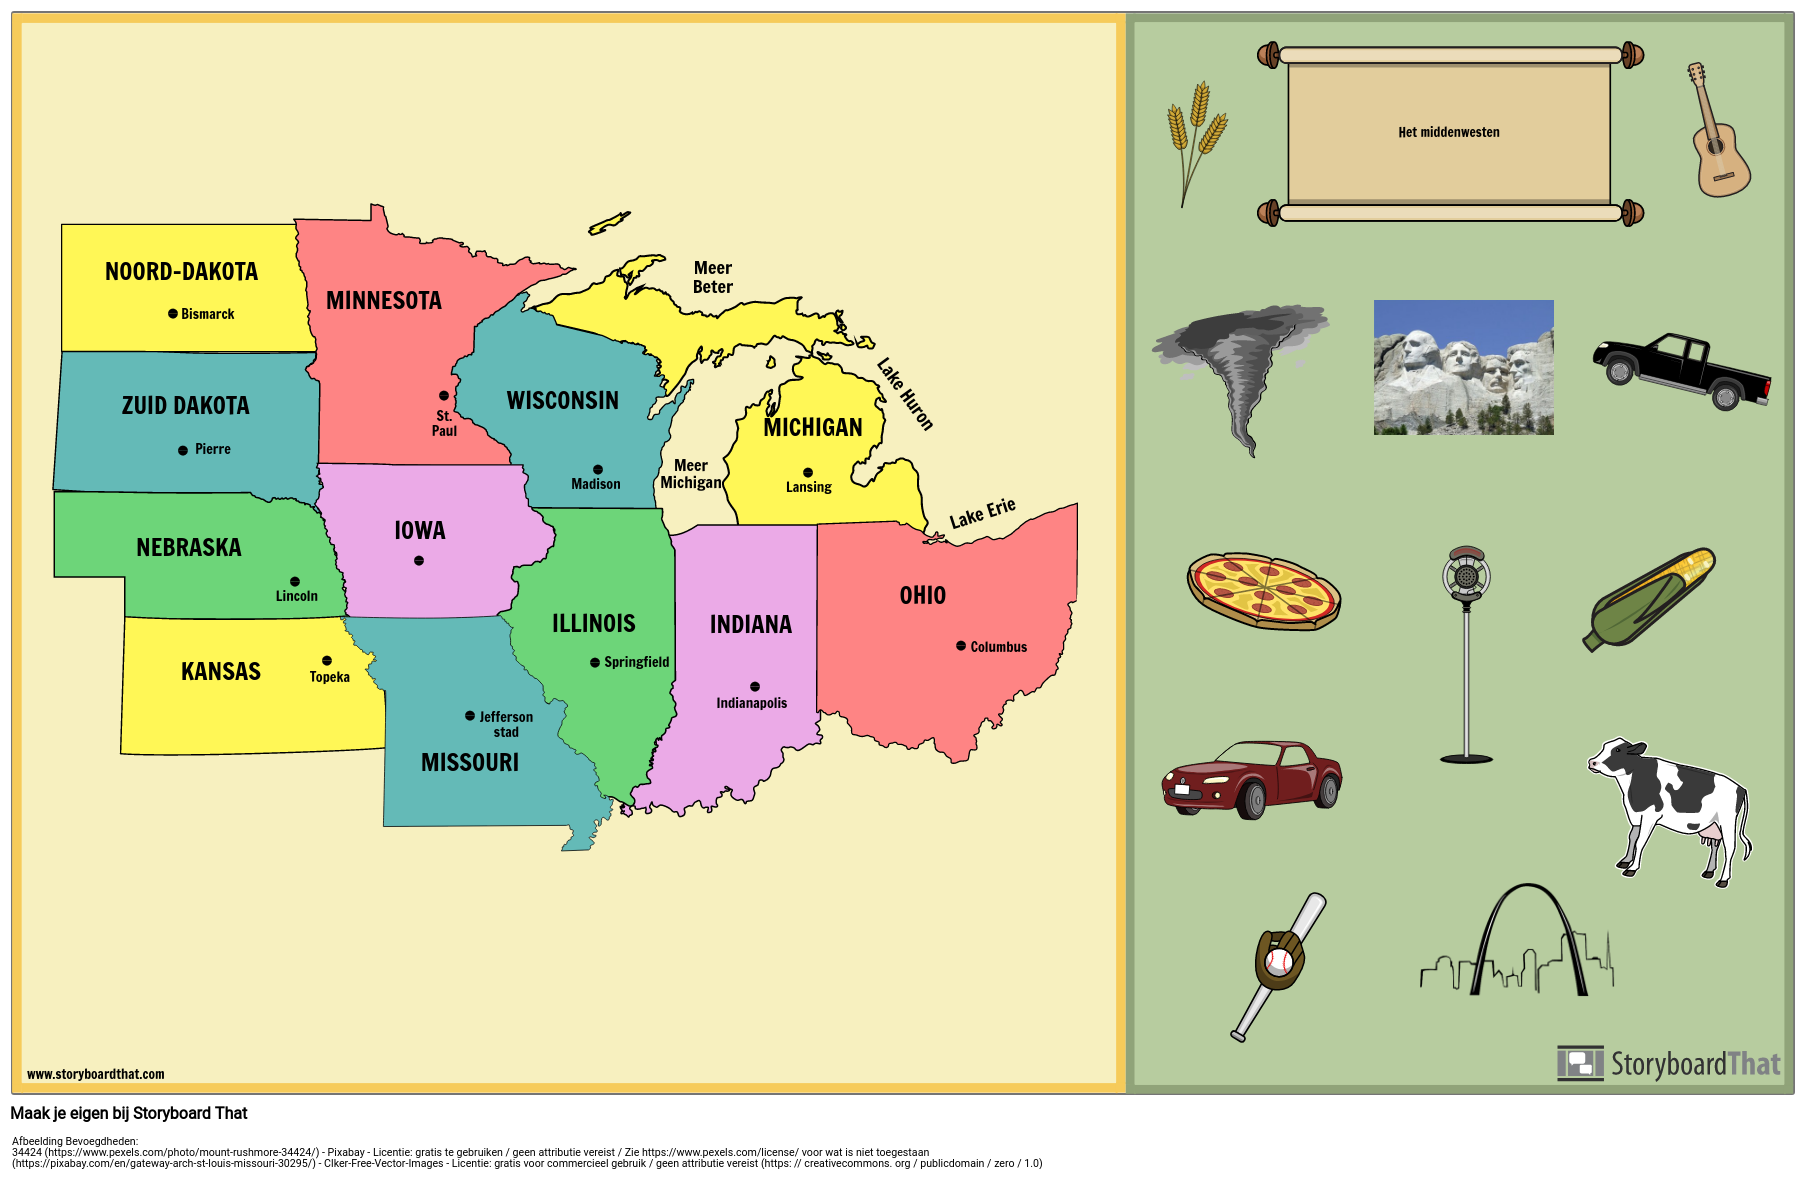 Midwest-kaart